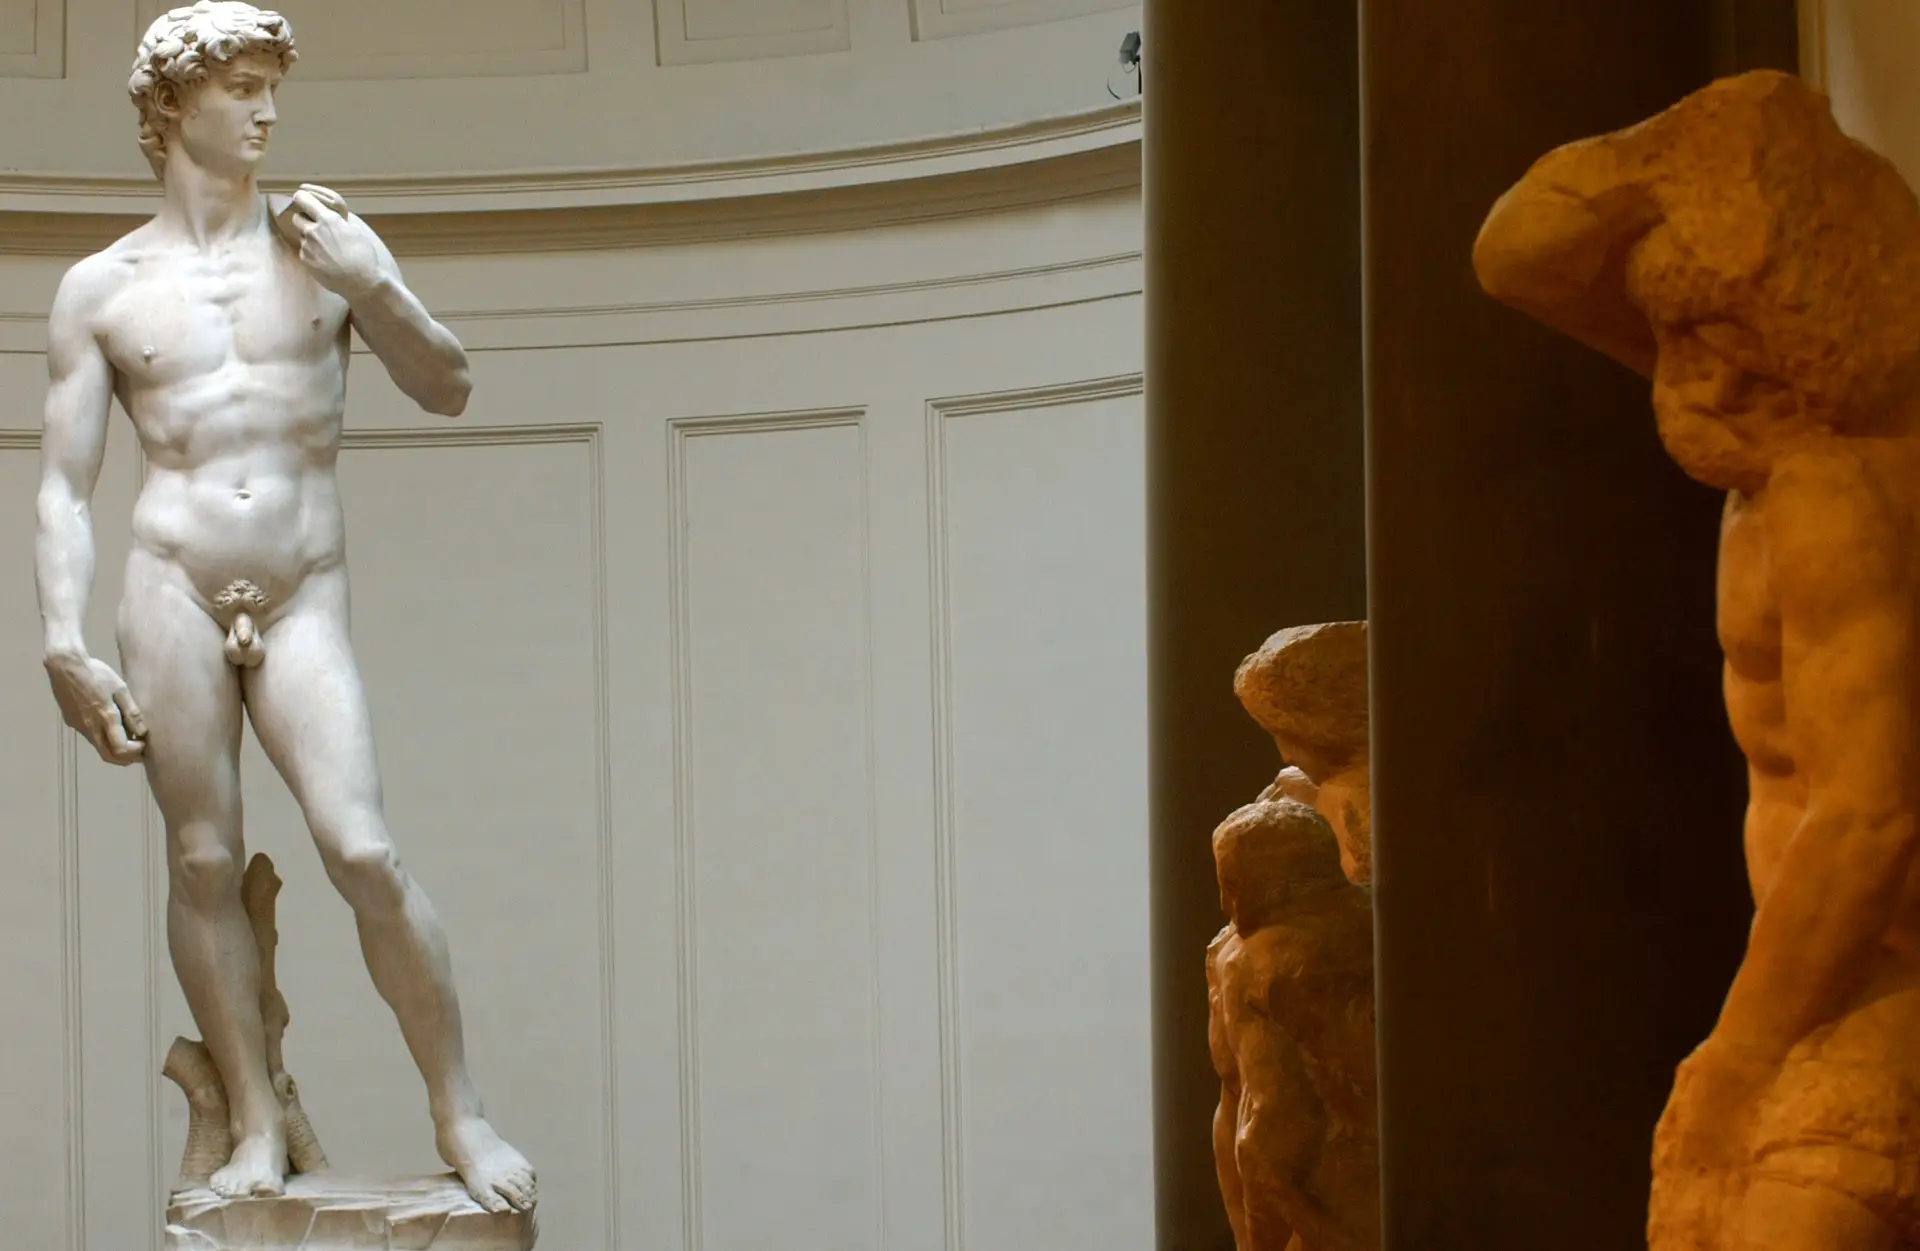 Nos EUA, um pai queixou-se da nudez da estátua de Michelangelo e a diretora da escola demitiu-se